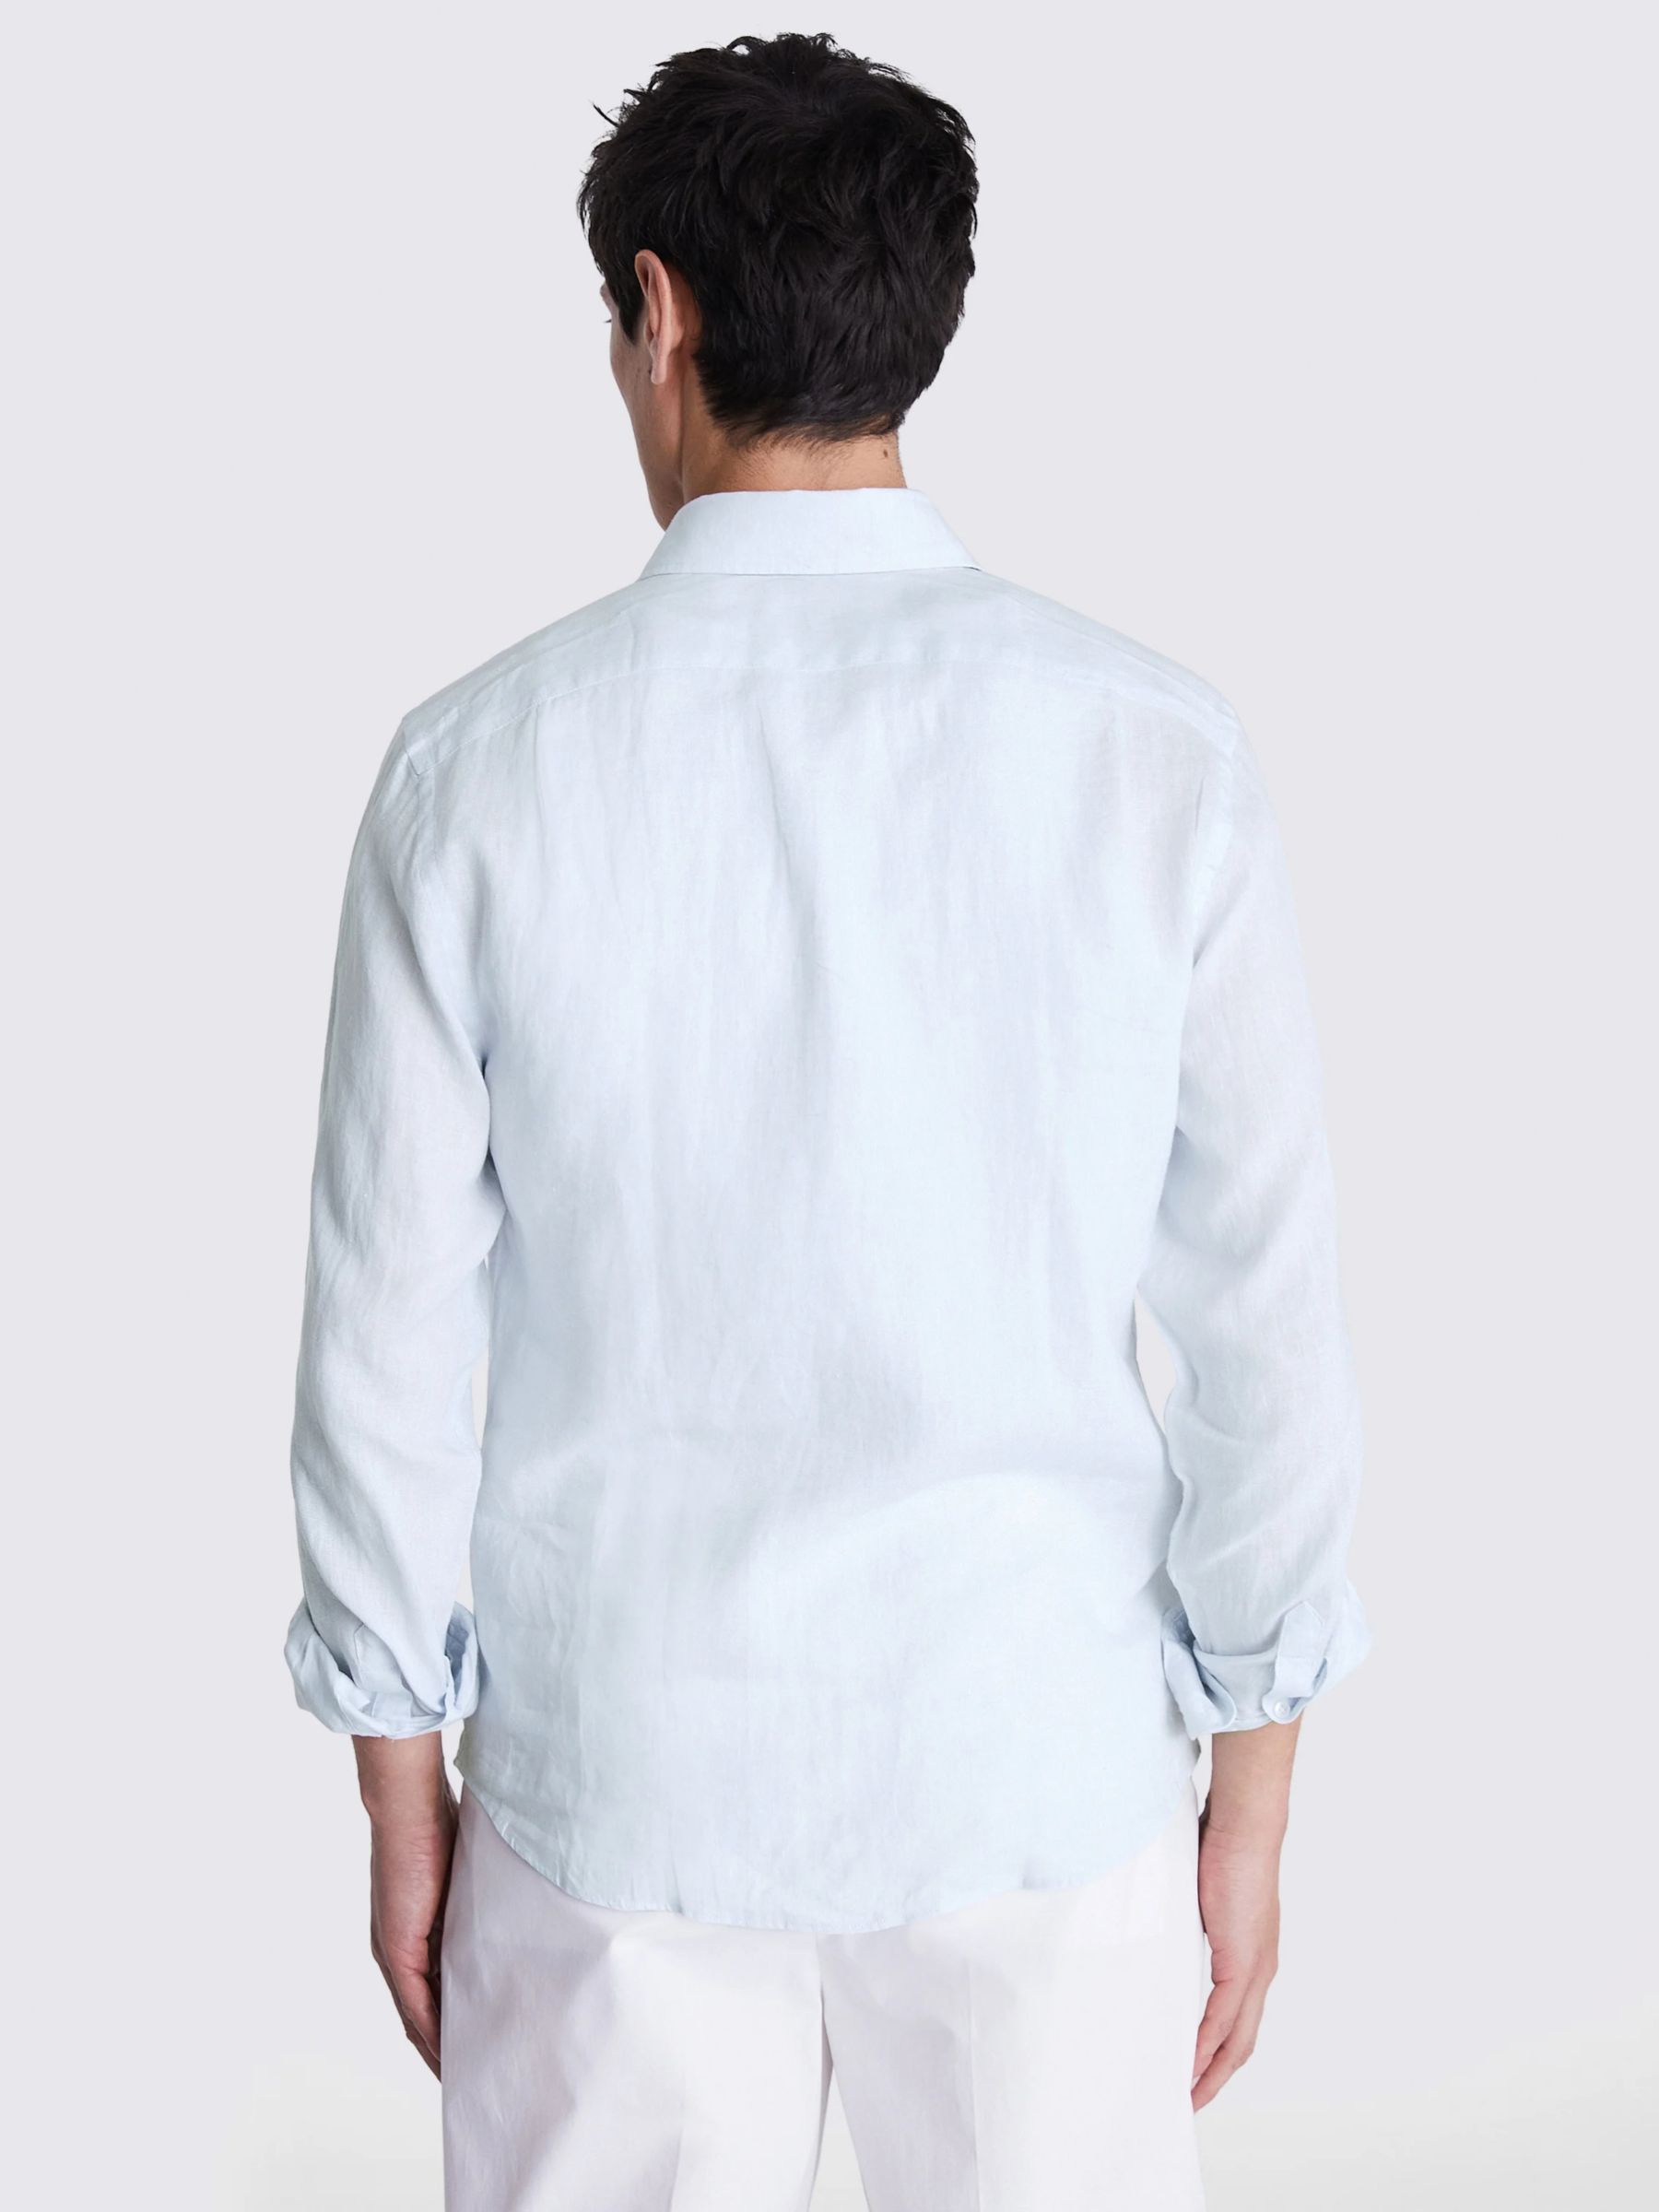 Moss Tailored Fit Linen Long Sleeve Shirt, Sky Blue, S